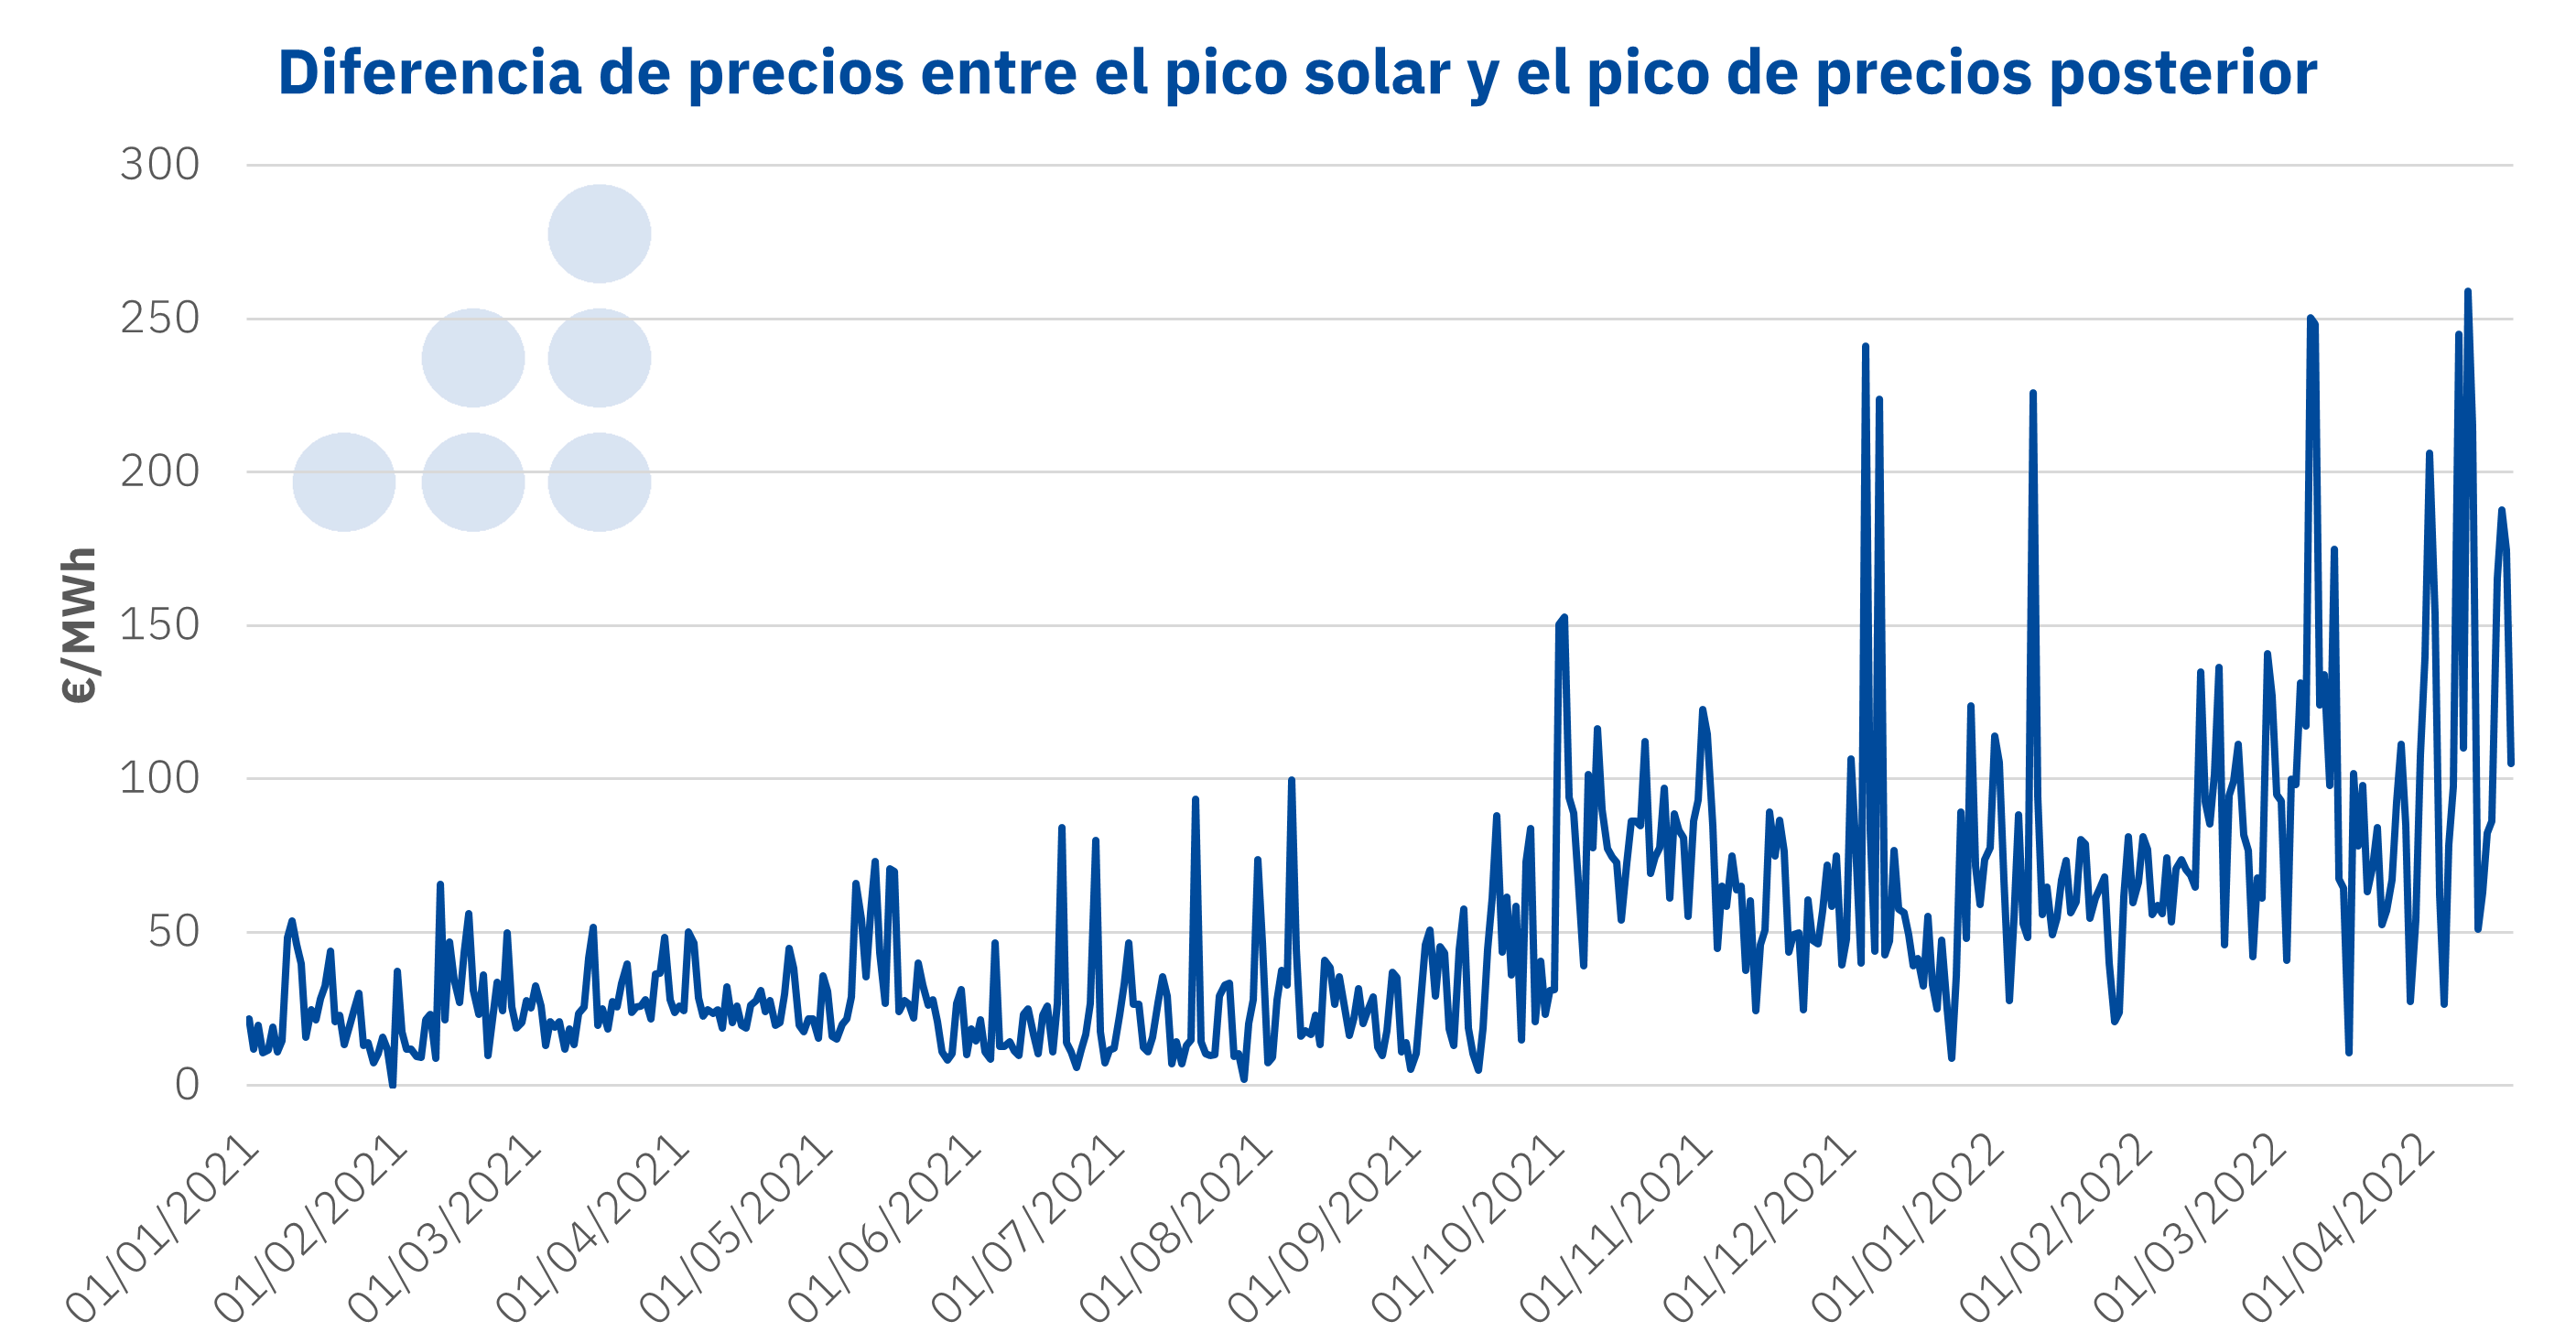 AleaSoft - Diferencia precios mercado electricidad Espana